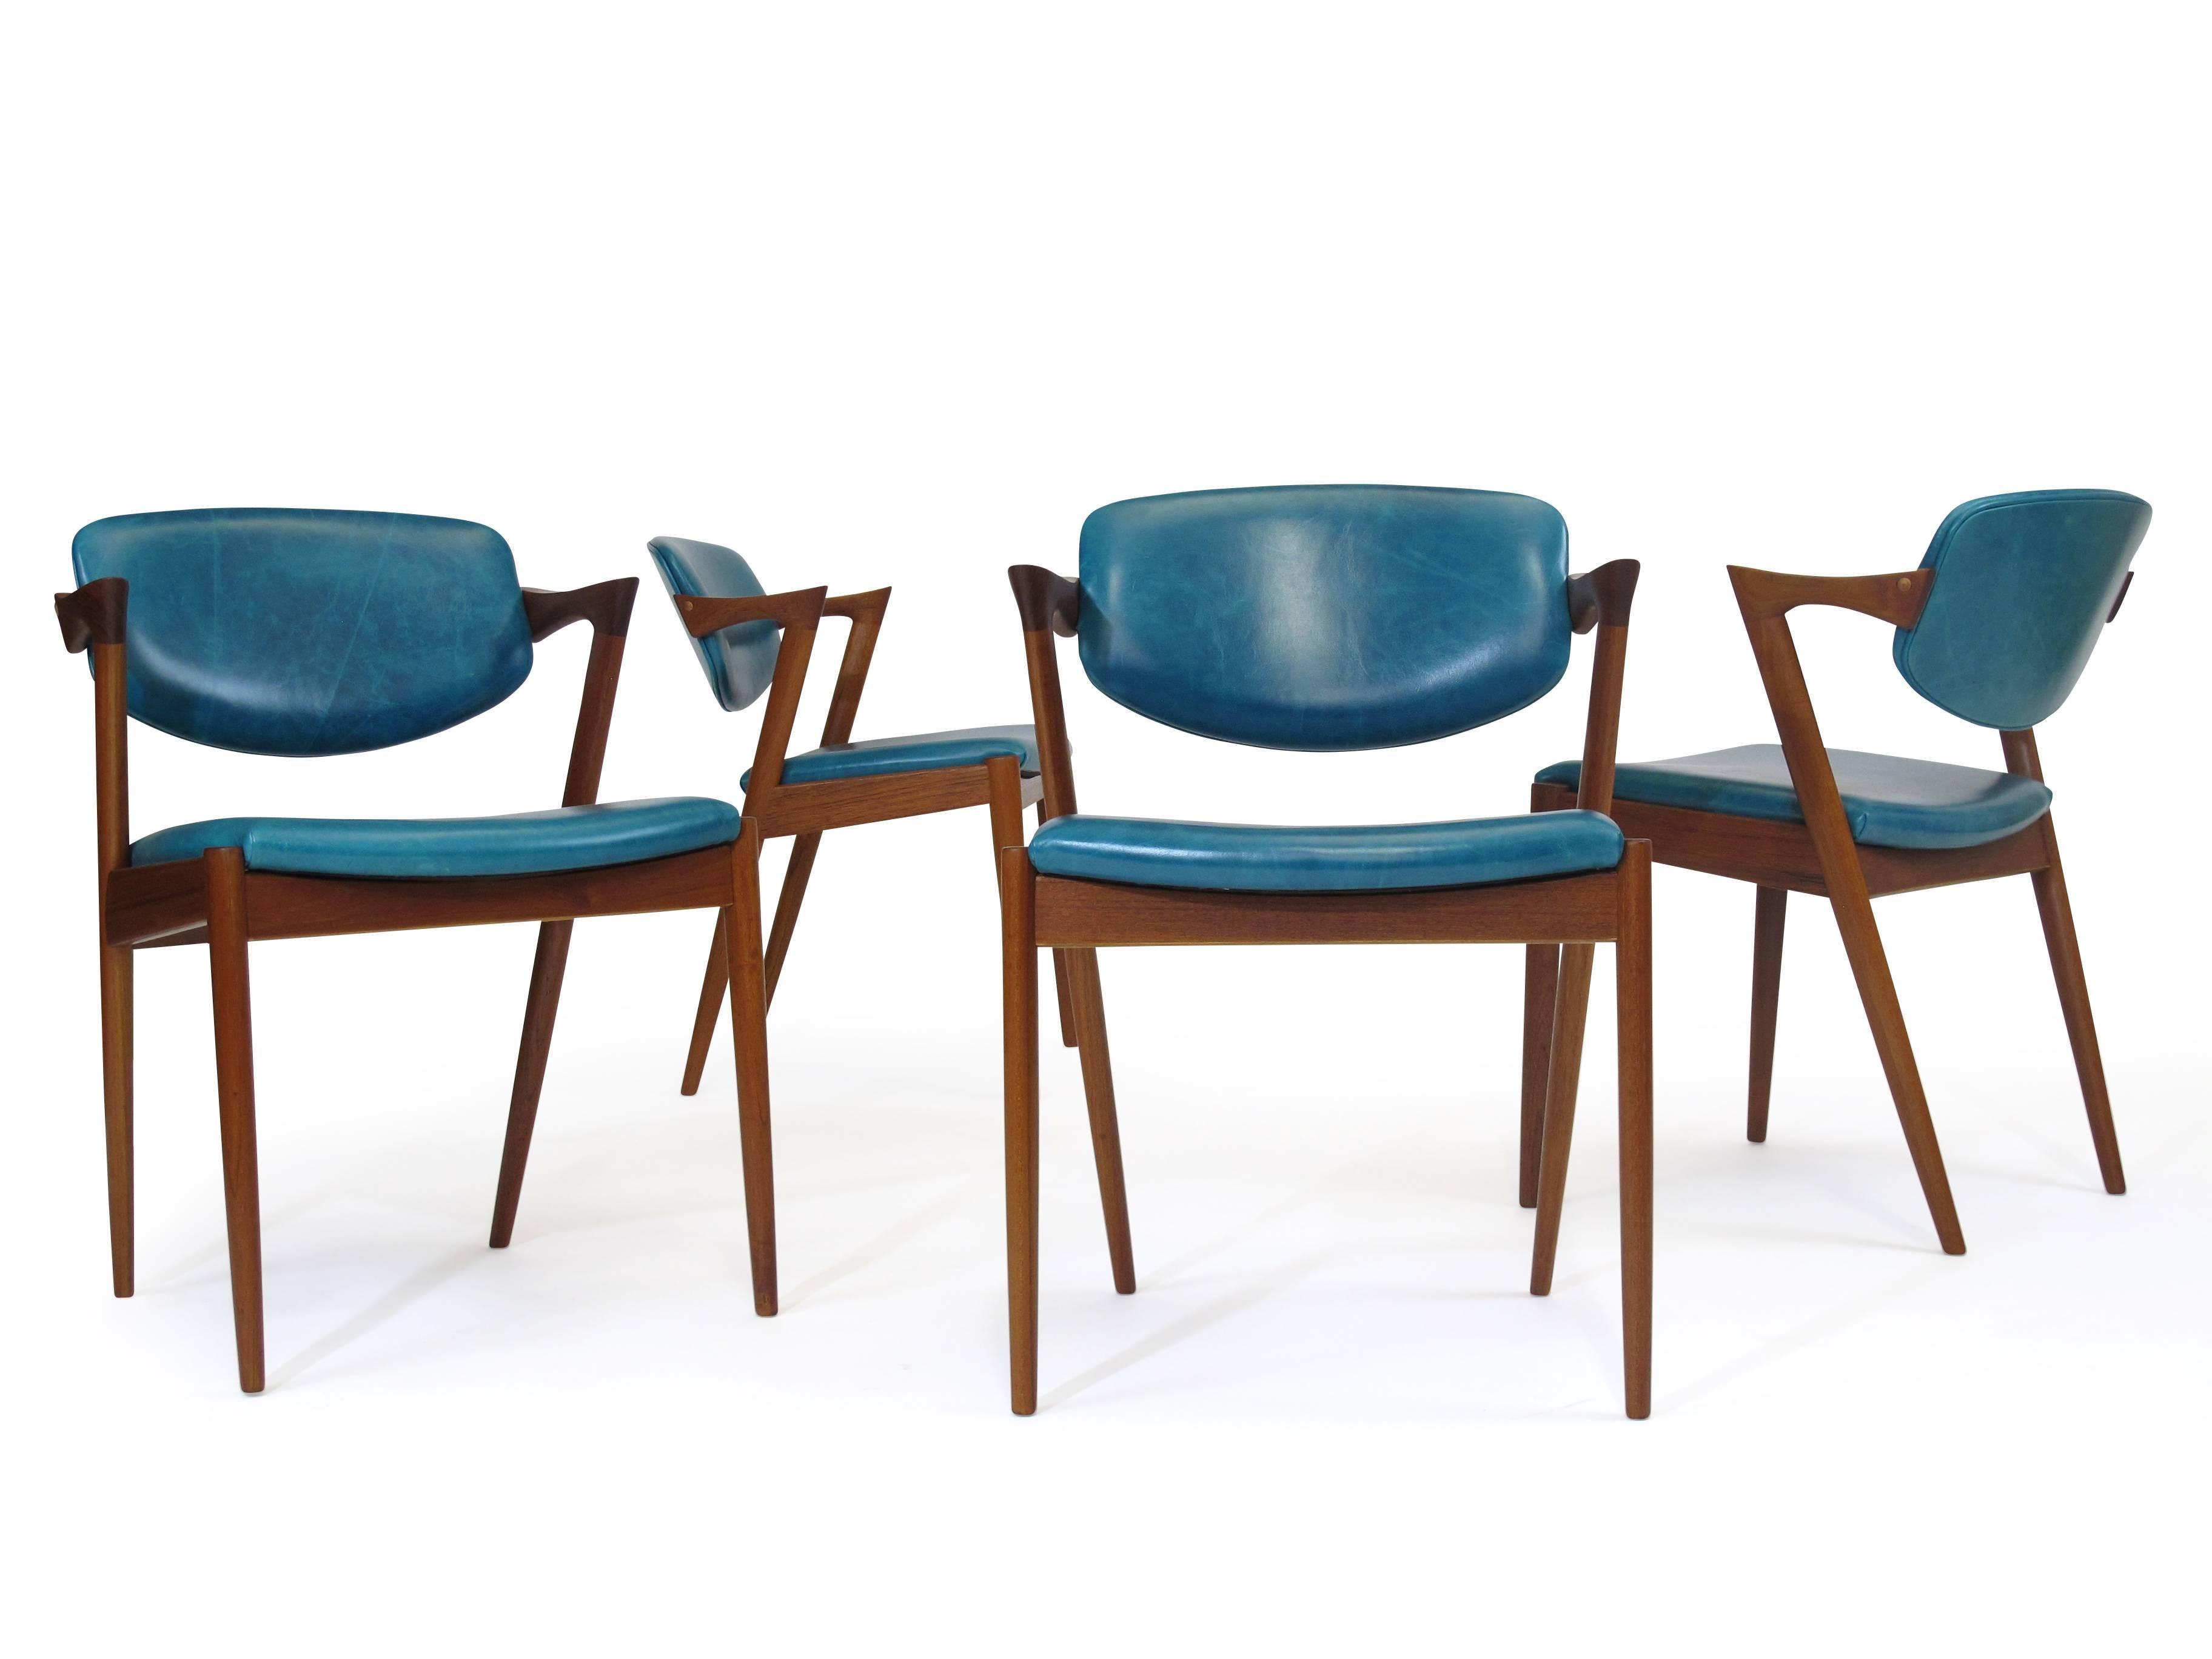 Six chaises de salle à manger en teck Kai Kristiansen modèle 42 fabriquées par V. Schou Andersen:: vers 1964. Les chaises sont dotées d'un cadre en teck massif:: d'un dossier inclinable et d'accoudoirs à angle. Les chaises ont été restaurées par des